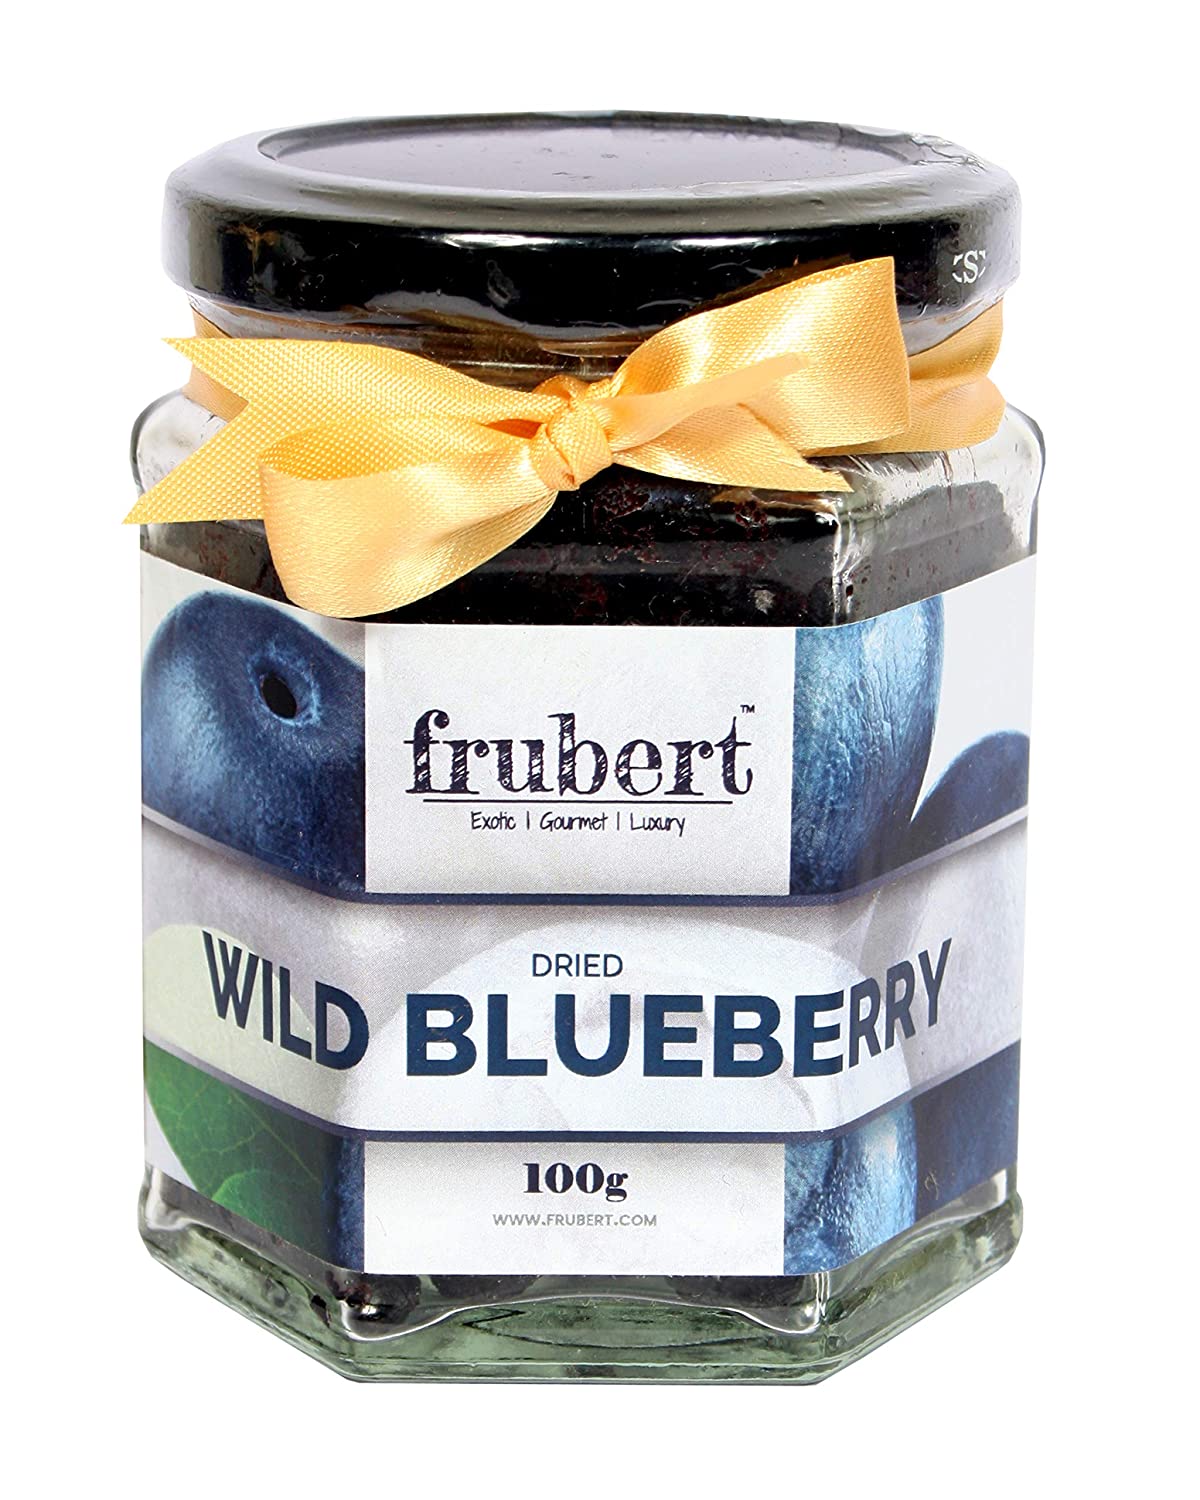 Dried Wild Blueberry - Suspire